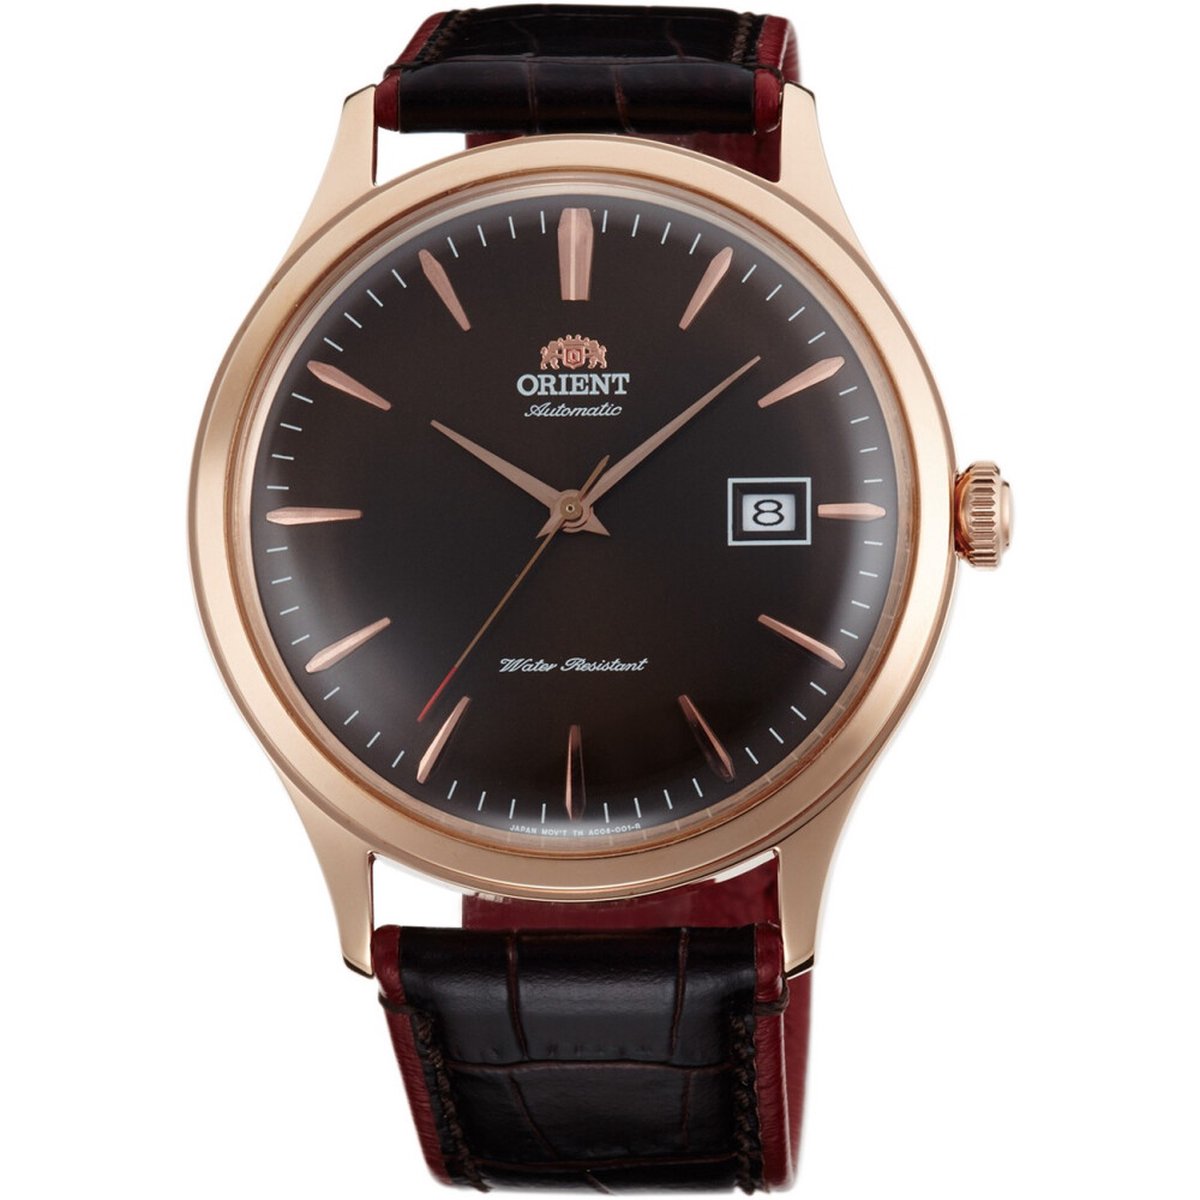 Orient - Horloge - Heren - Automatisch - Klassiek - FAC08001T0